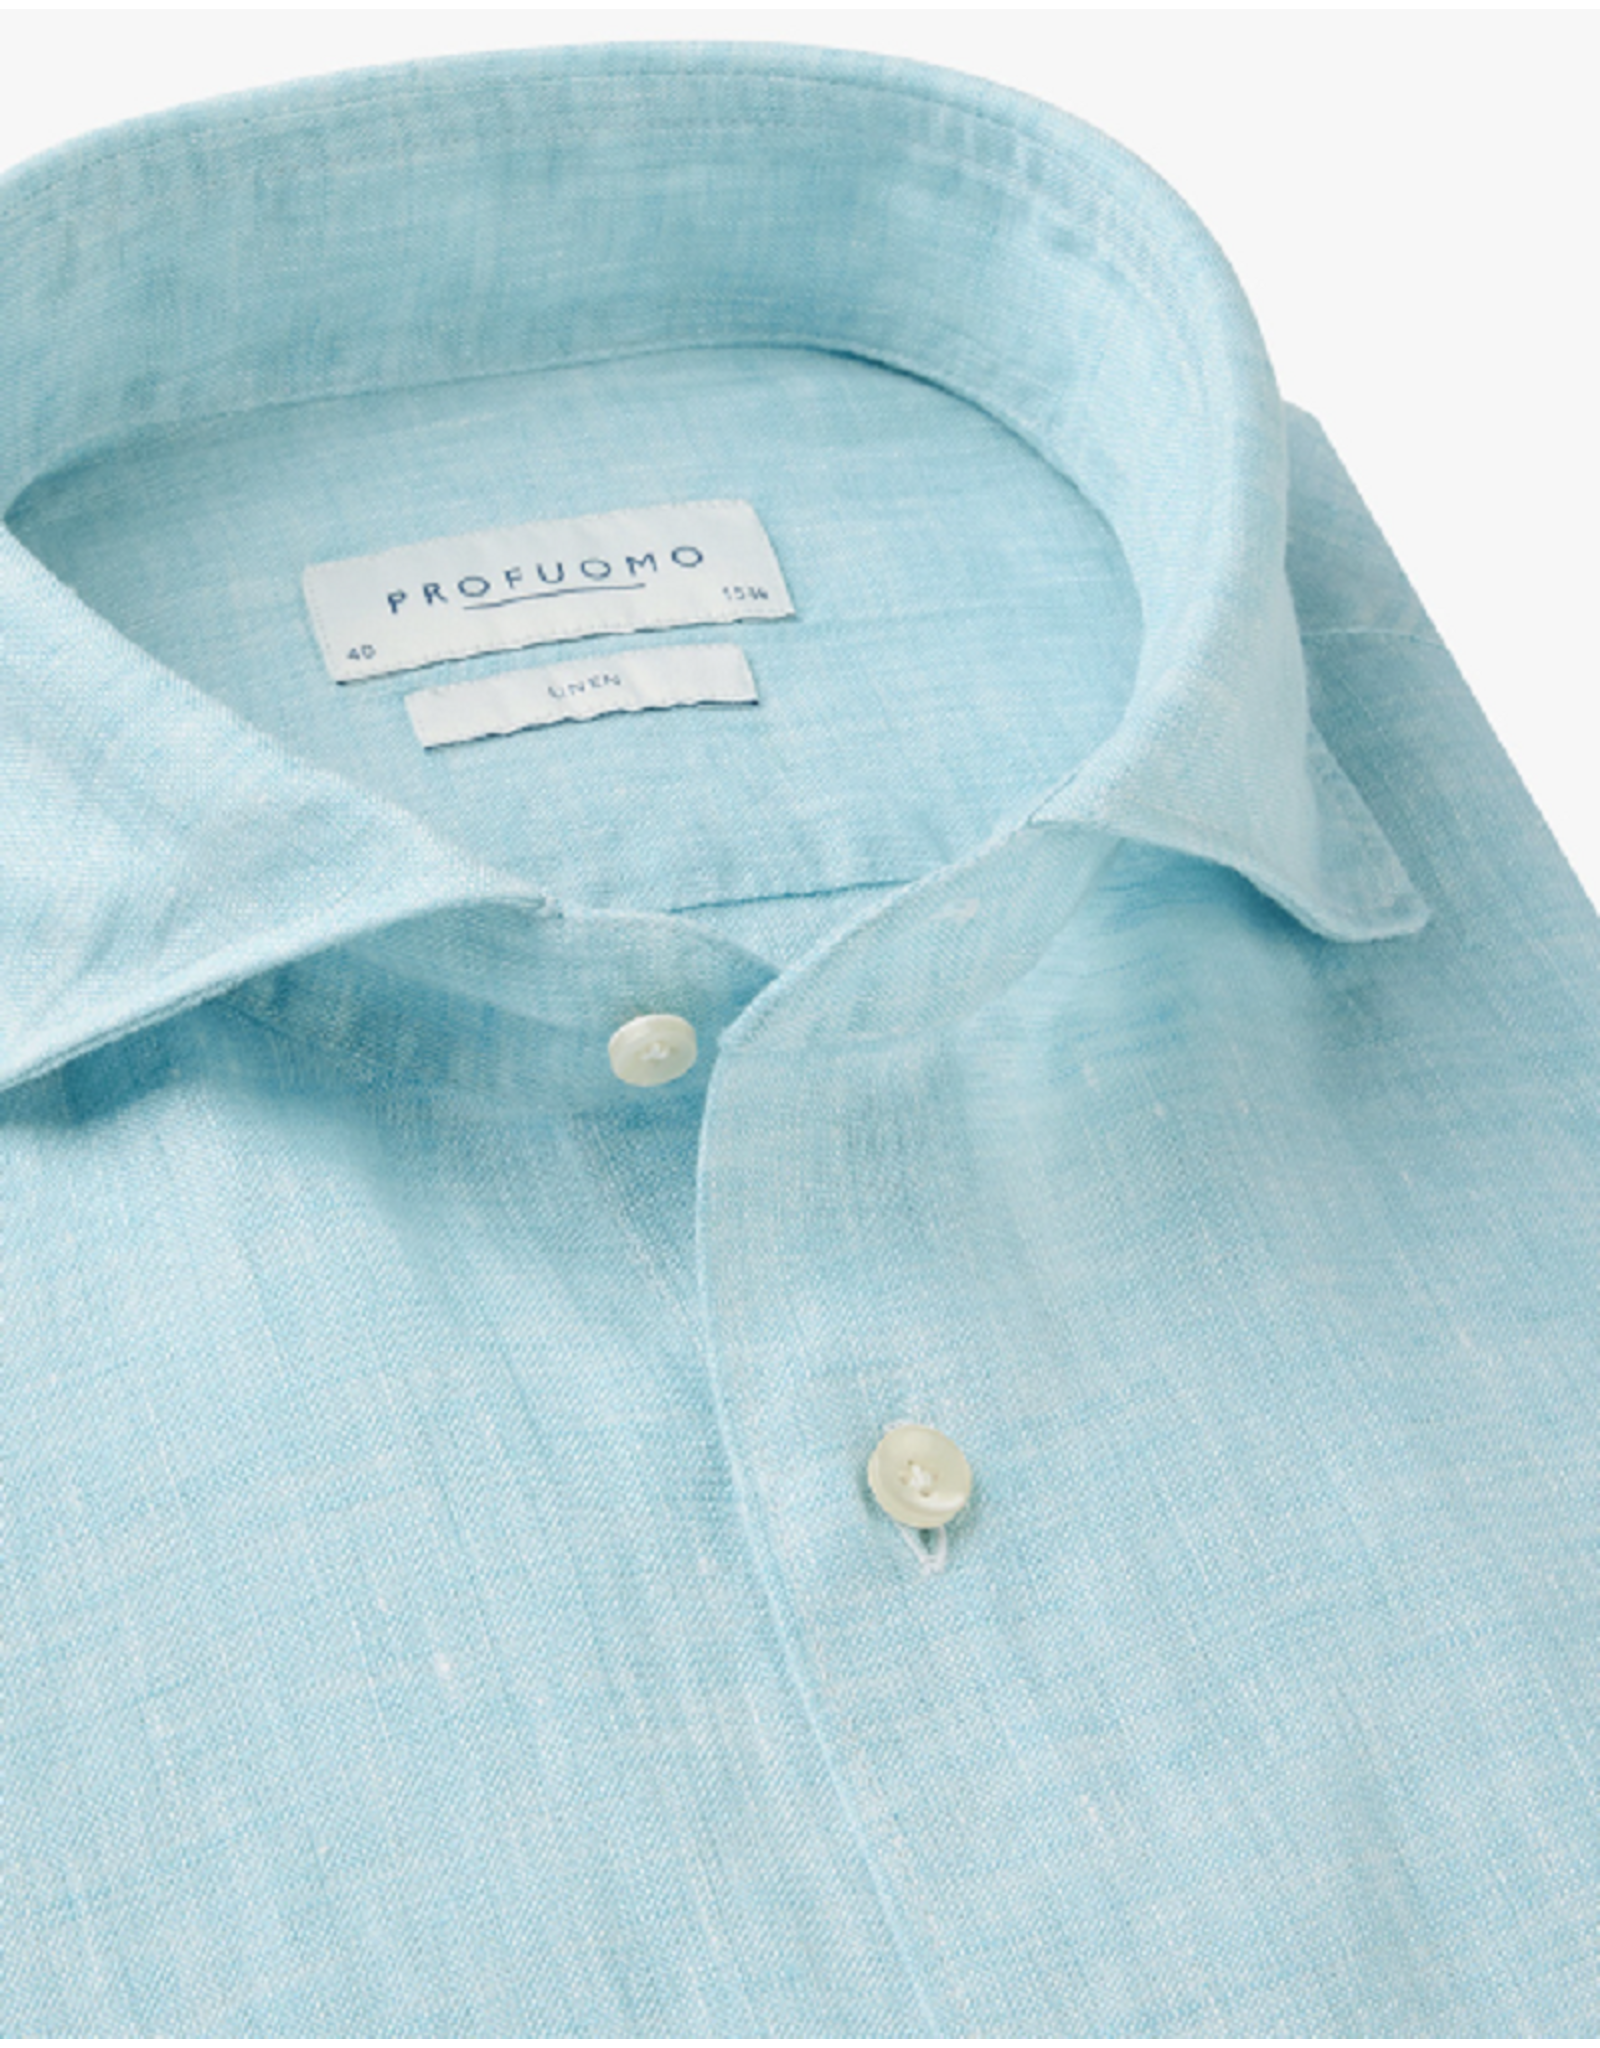 PROFUOMO Profuomo linnen shirt lichtblauw